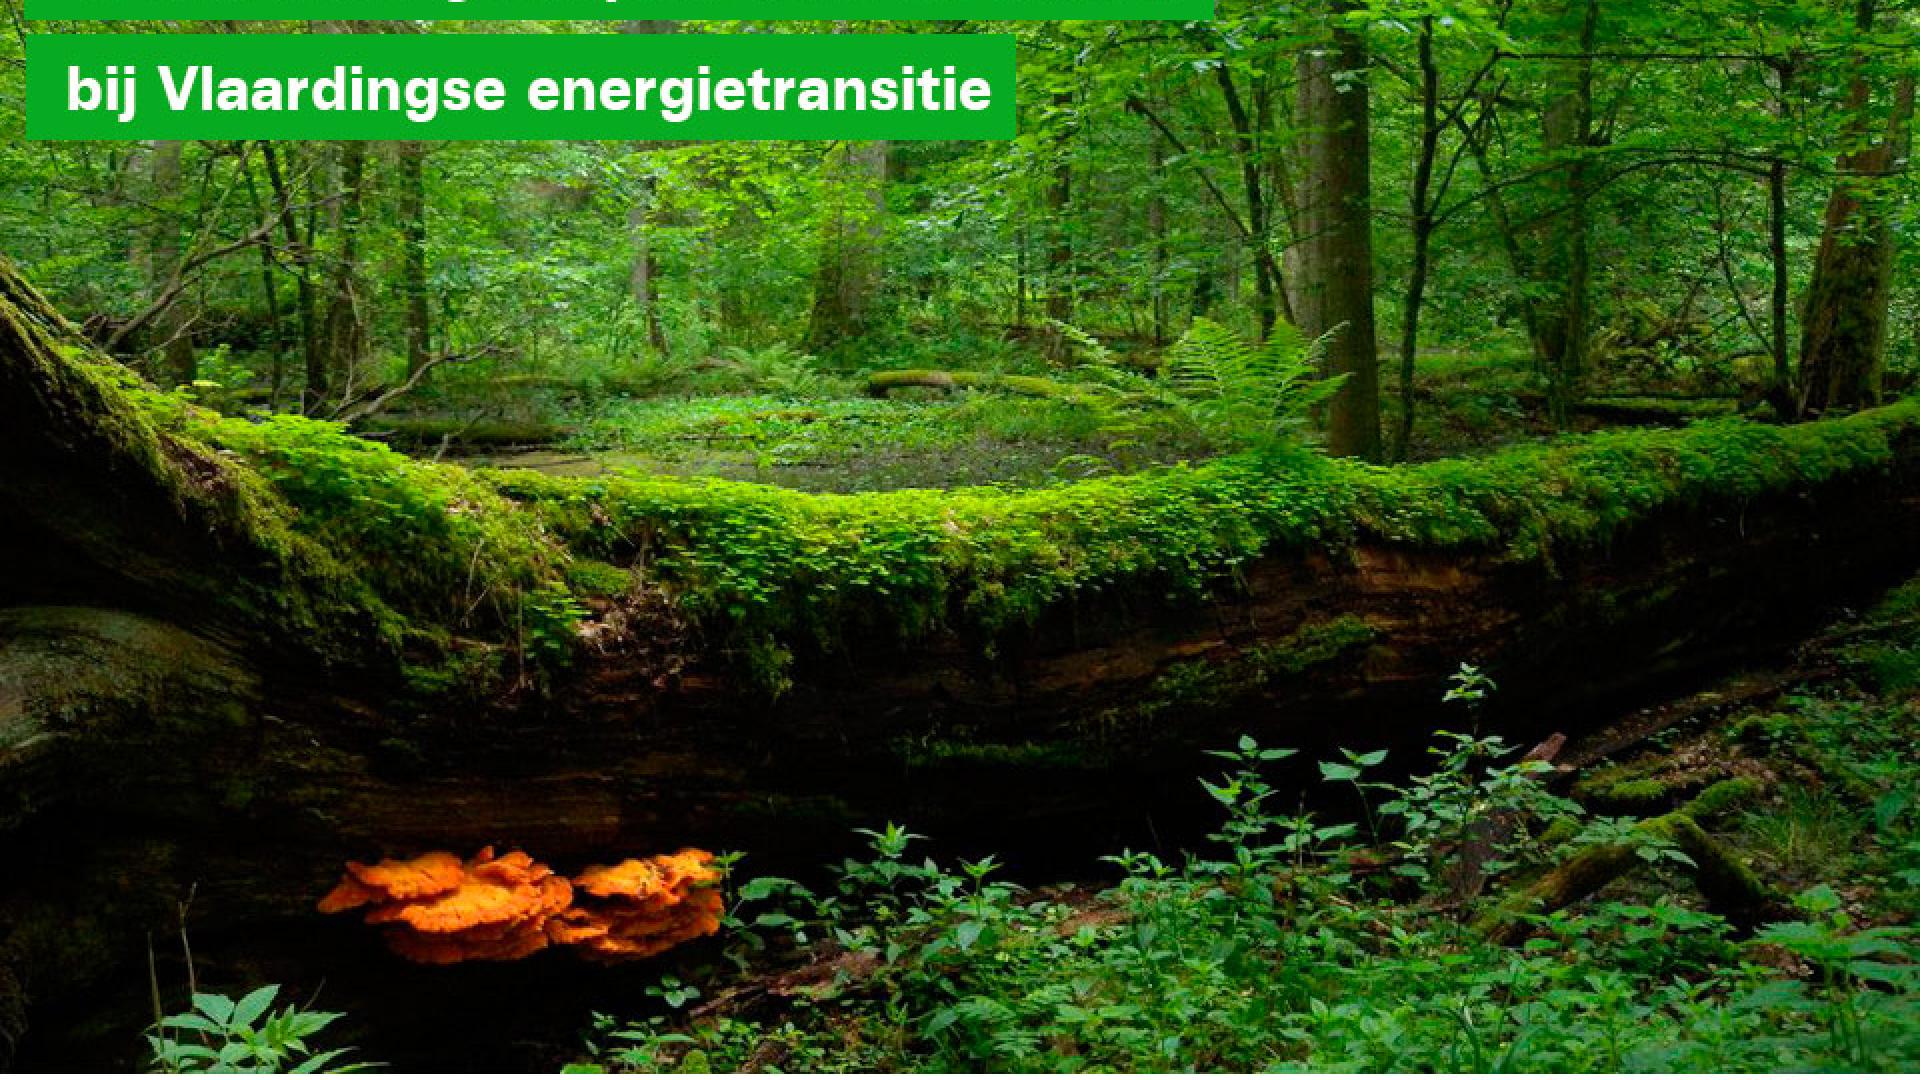 GroenLinks: géén plek voor biomassa bij Vlaardingse energietransitie - 14 juni 2020